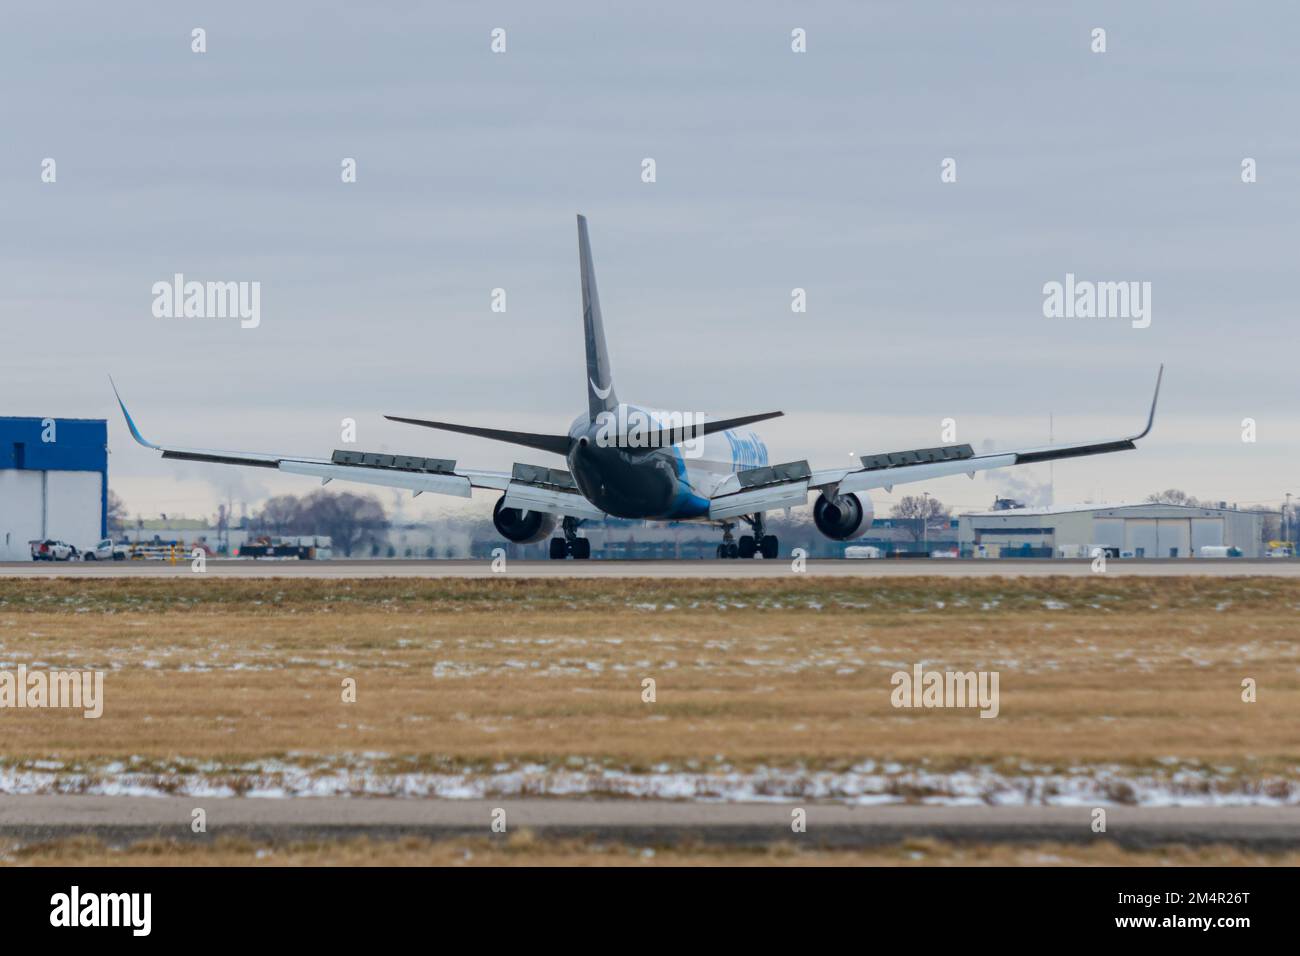 Rockford, il USA - 21 dicembre 2022: Amazon prime Air Boeing 767-300 F (N617AZ) tassando all'aeroporto internazionale Rockford di Chicago. Foto Stock